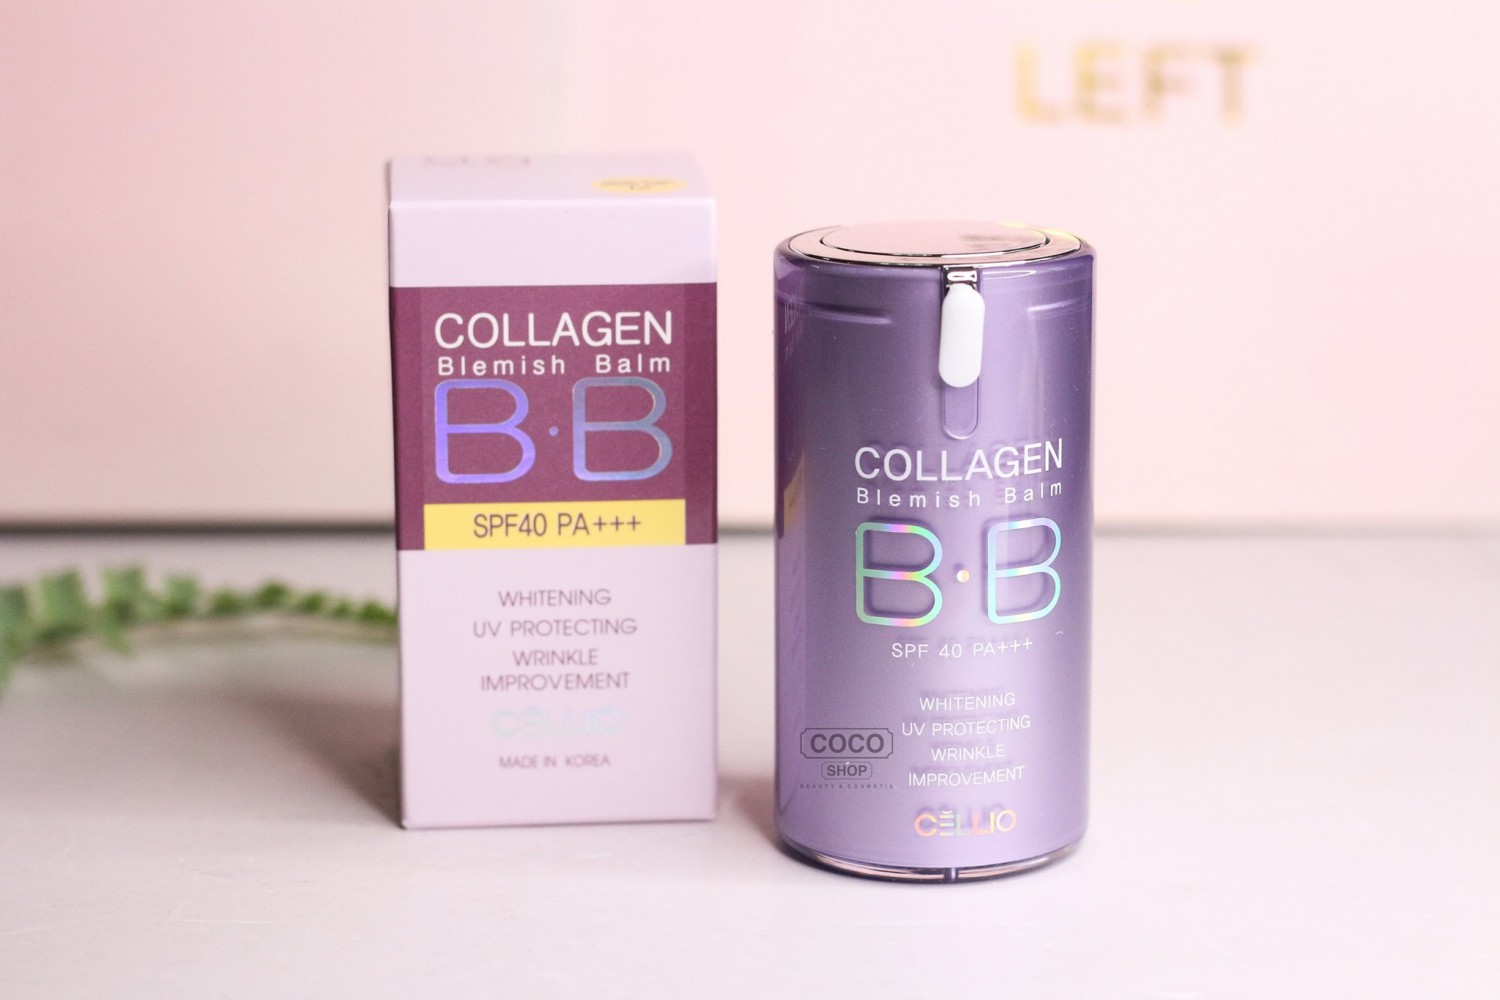 Với kem nền chống nắng Collagen BB Cellio, bạn sẽ không chỉ được bảo vệ da khỏi tác động của tia UV mà còn cung cấp thêm collagen giúp da mềm mịn, căng bóng hơn. Nhanh chóng chọn ngay sản phẩm này để sở hữu làn da rạng rỡ, đầy sức sống trong ngày hè sôi động!